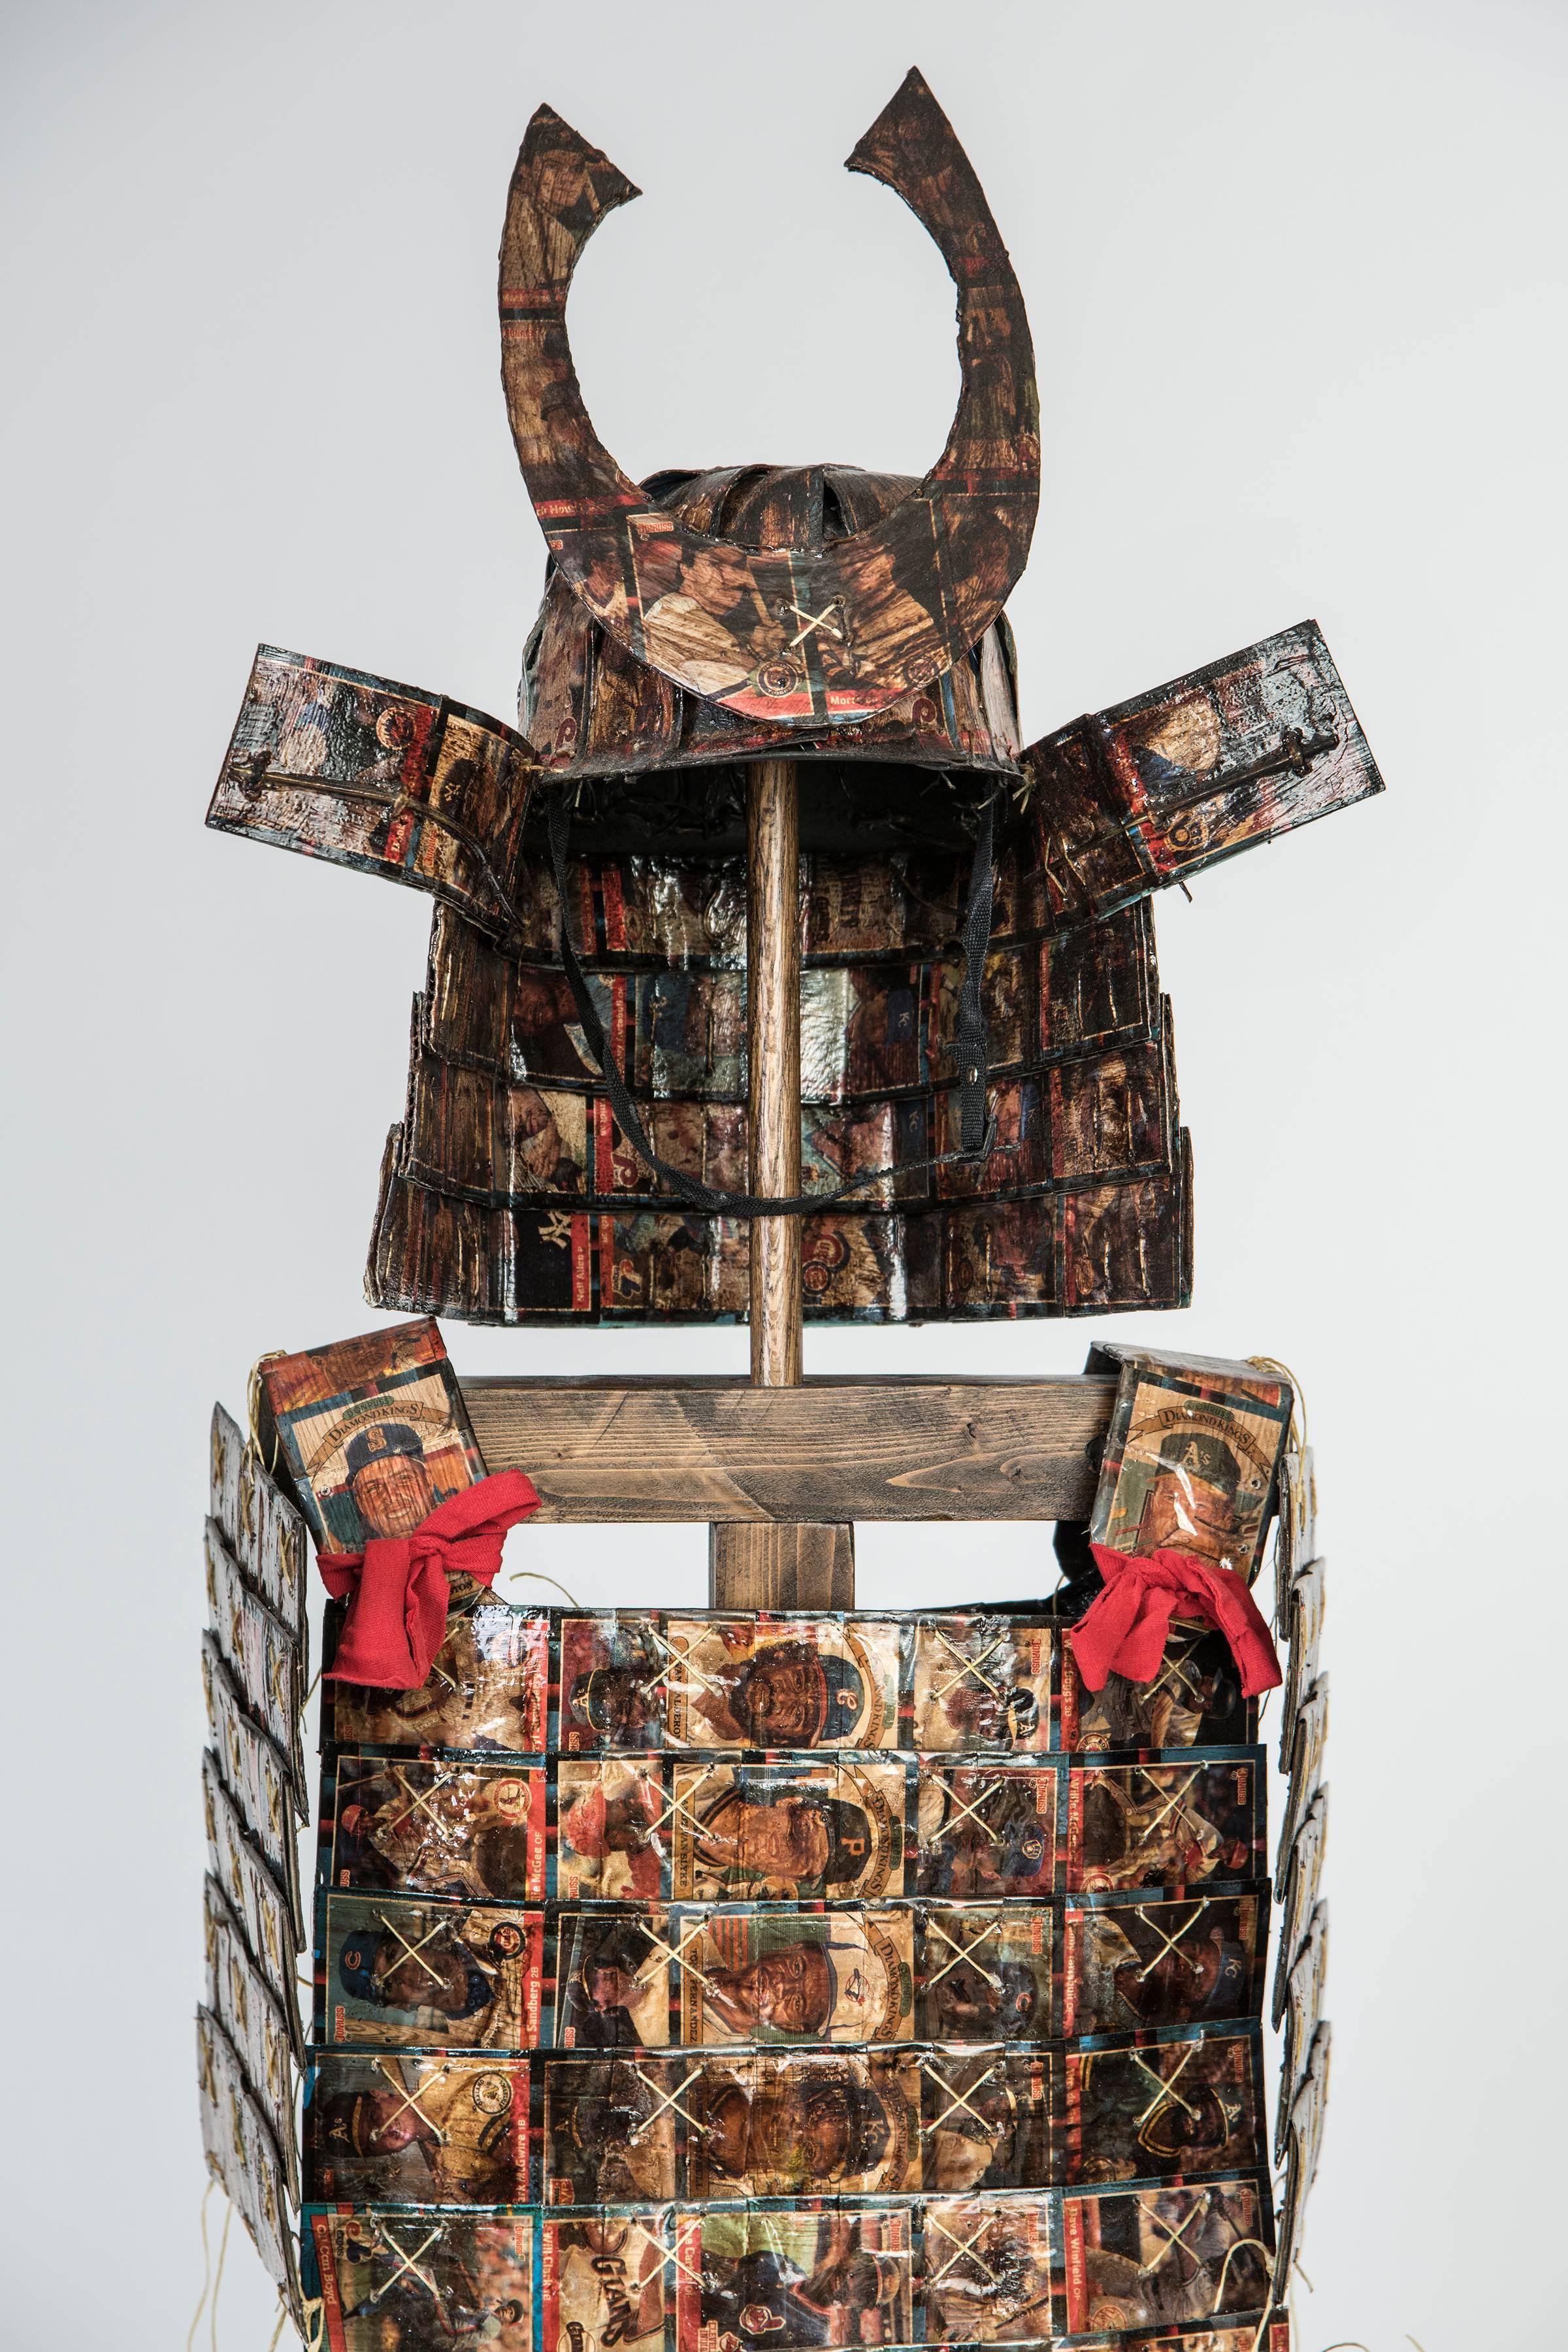 Donruss 88 Samurai Armor - Contemporary Mixed Media Art by Joshua Goode